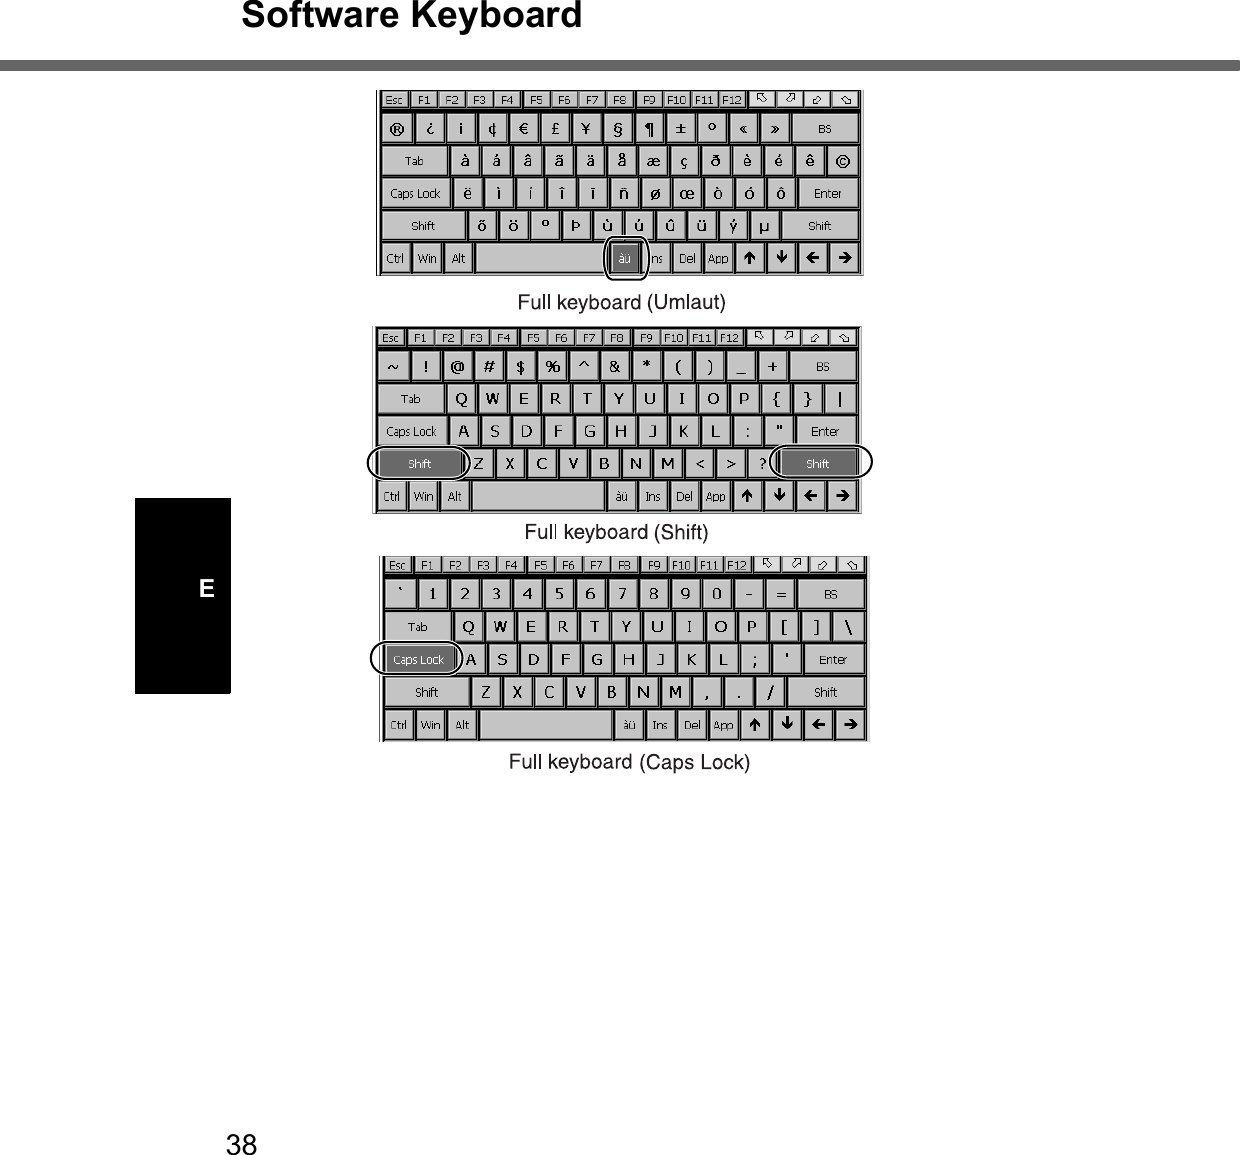 38Software KeyboardE